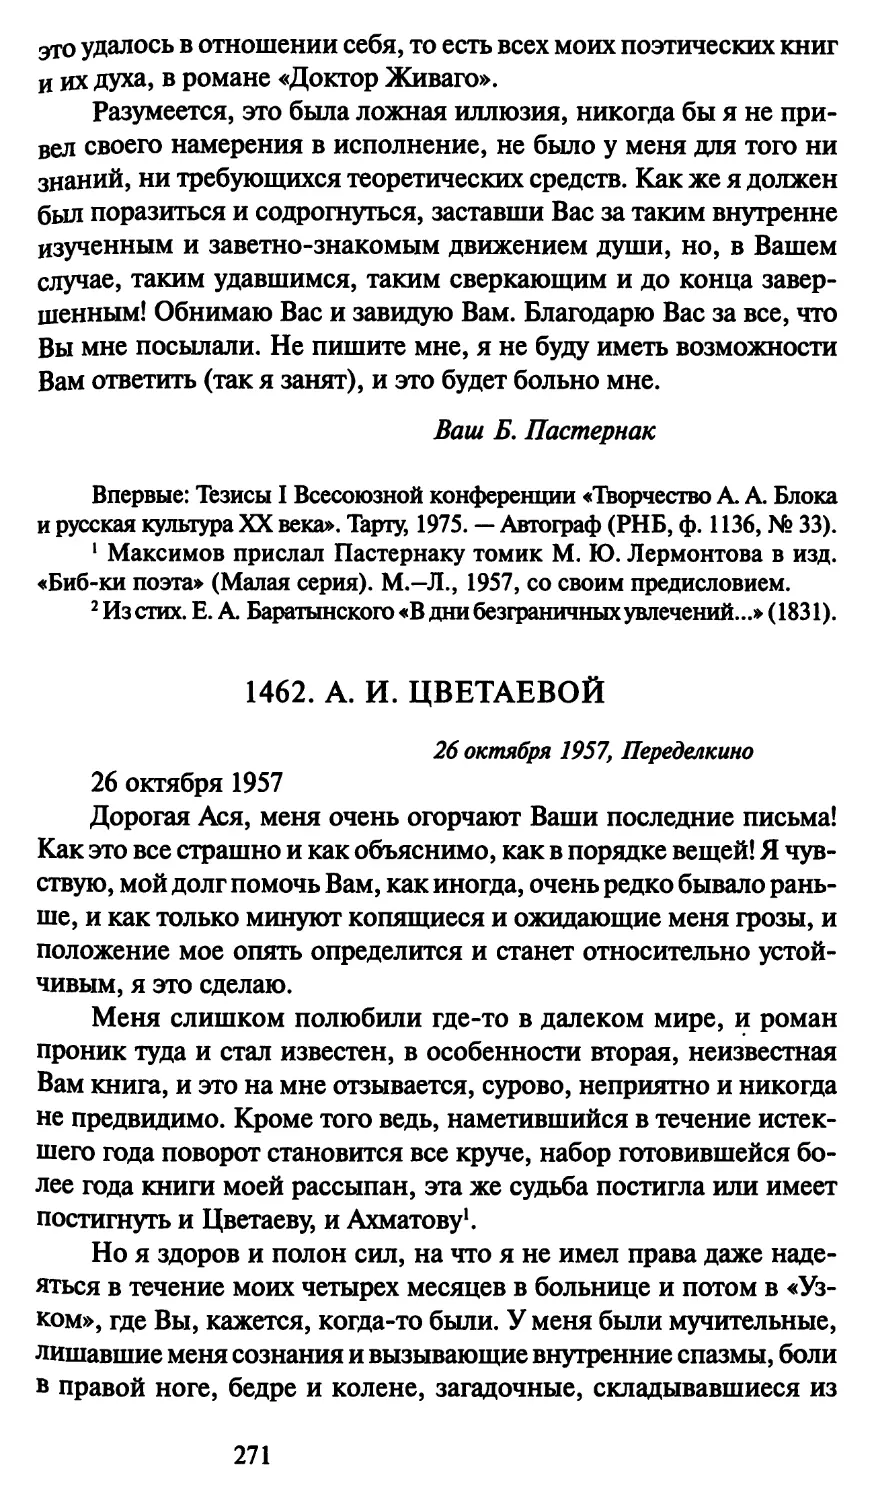 1462. А. И. Цветаевой 26 октября 1957